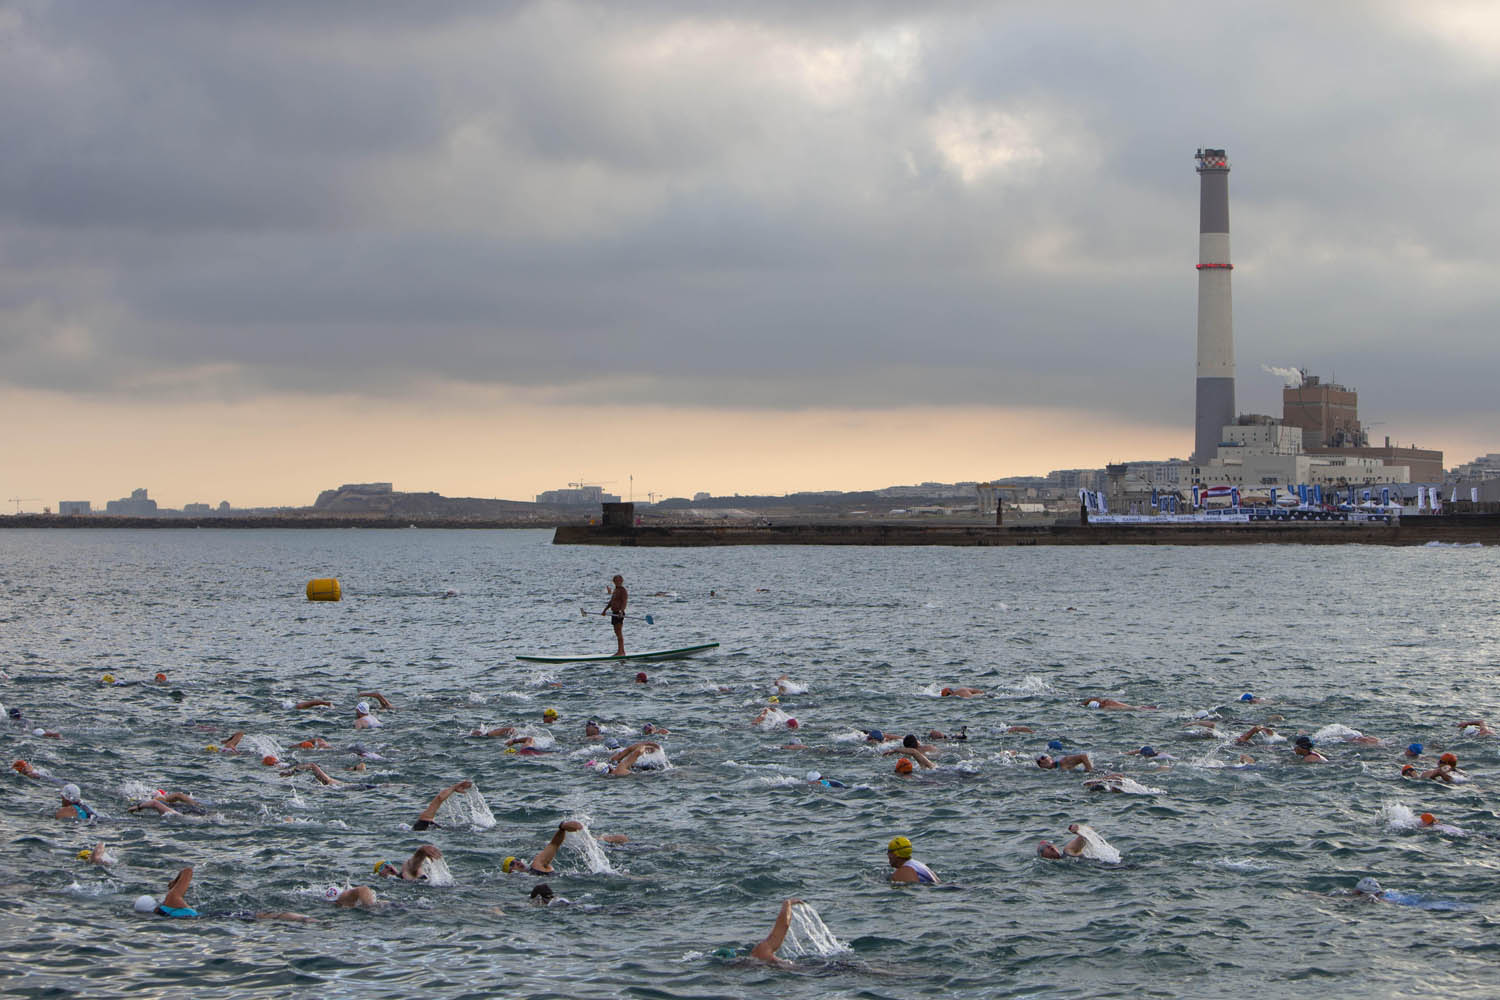 June 22, 2013. Athletes swim in the Mediterranean Sea at the beginning of the Tel Aviv Triathlon in Tel Aviv, Israel.